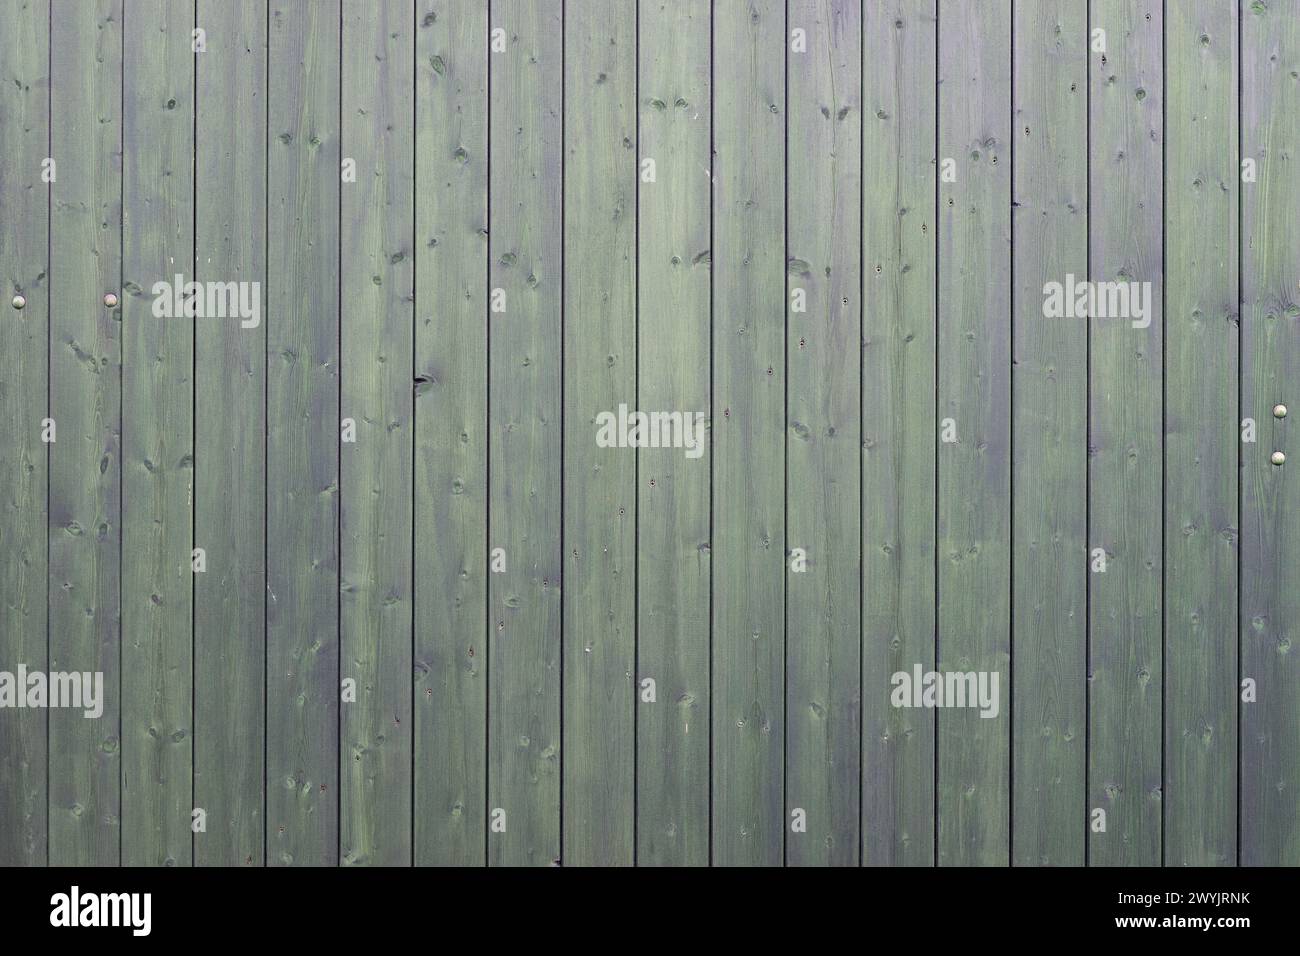 Hintergrund mit dunkelgrünen Holzbrettern Stockfoto